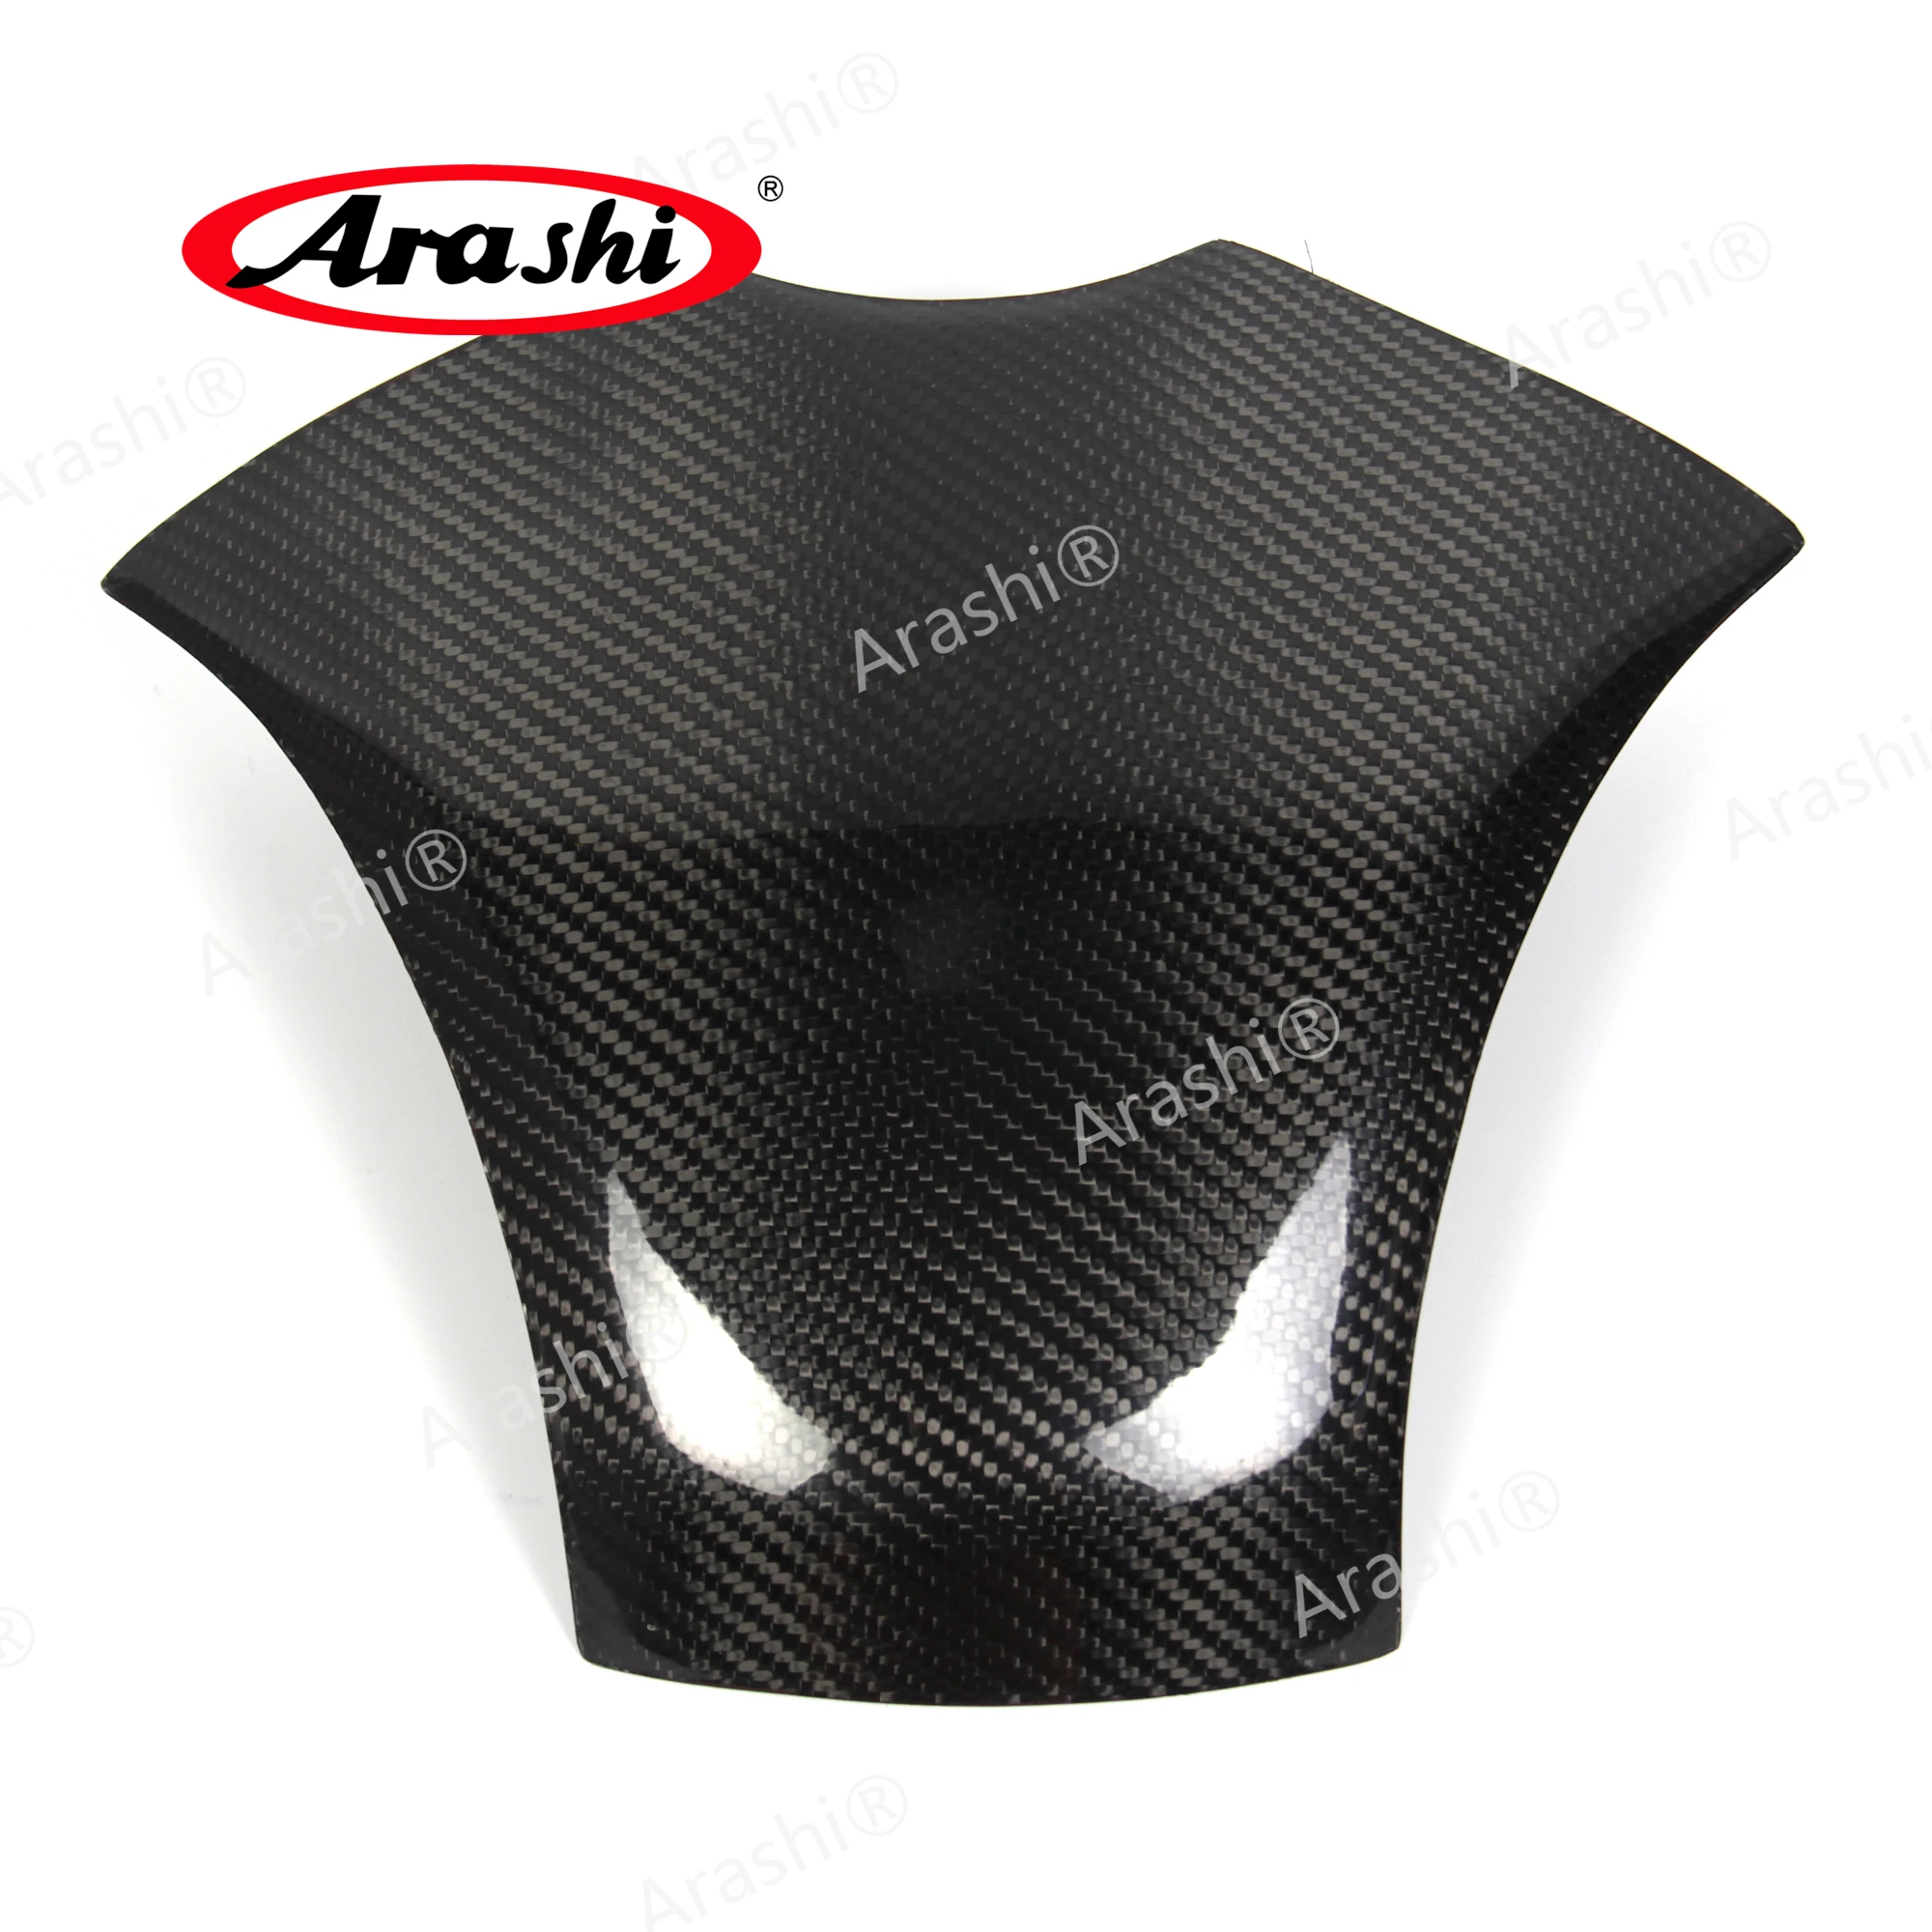 

Arashi Carbon Fiber Gas Fuel Tank Cover For HONDA CBR600RR CBR 600 RR CBR600 600RR 2007 2008 2009 2010 2011 2012 Fairing Shell